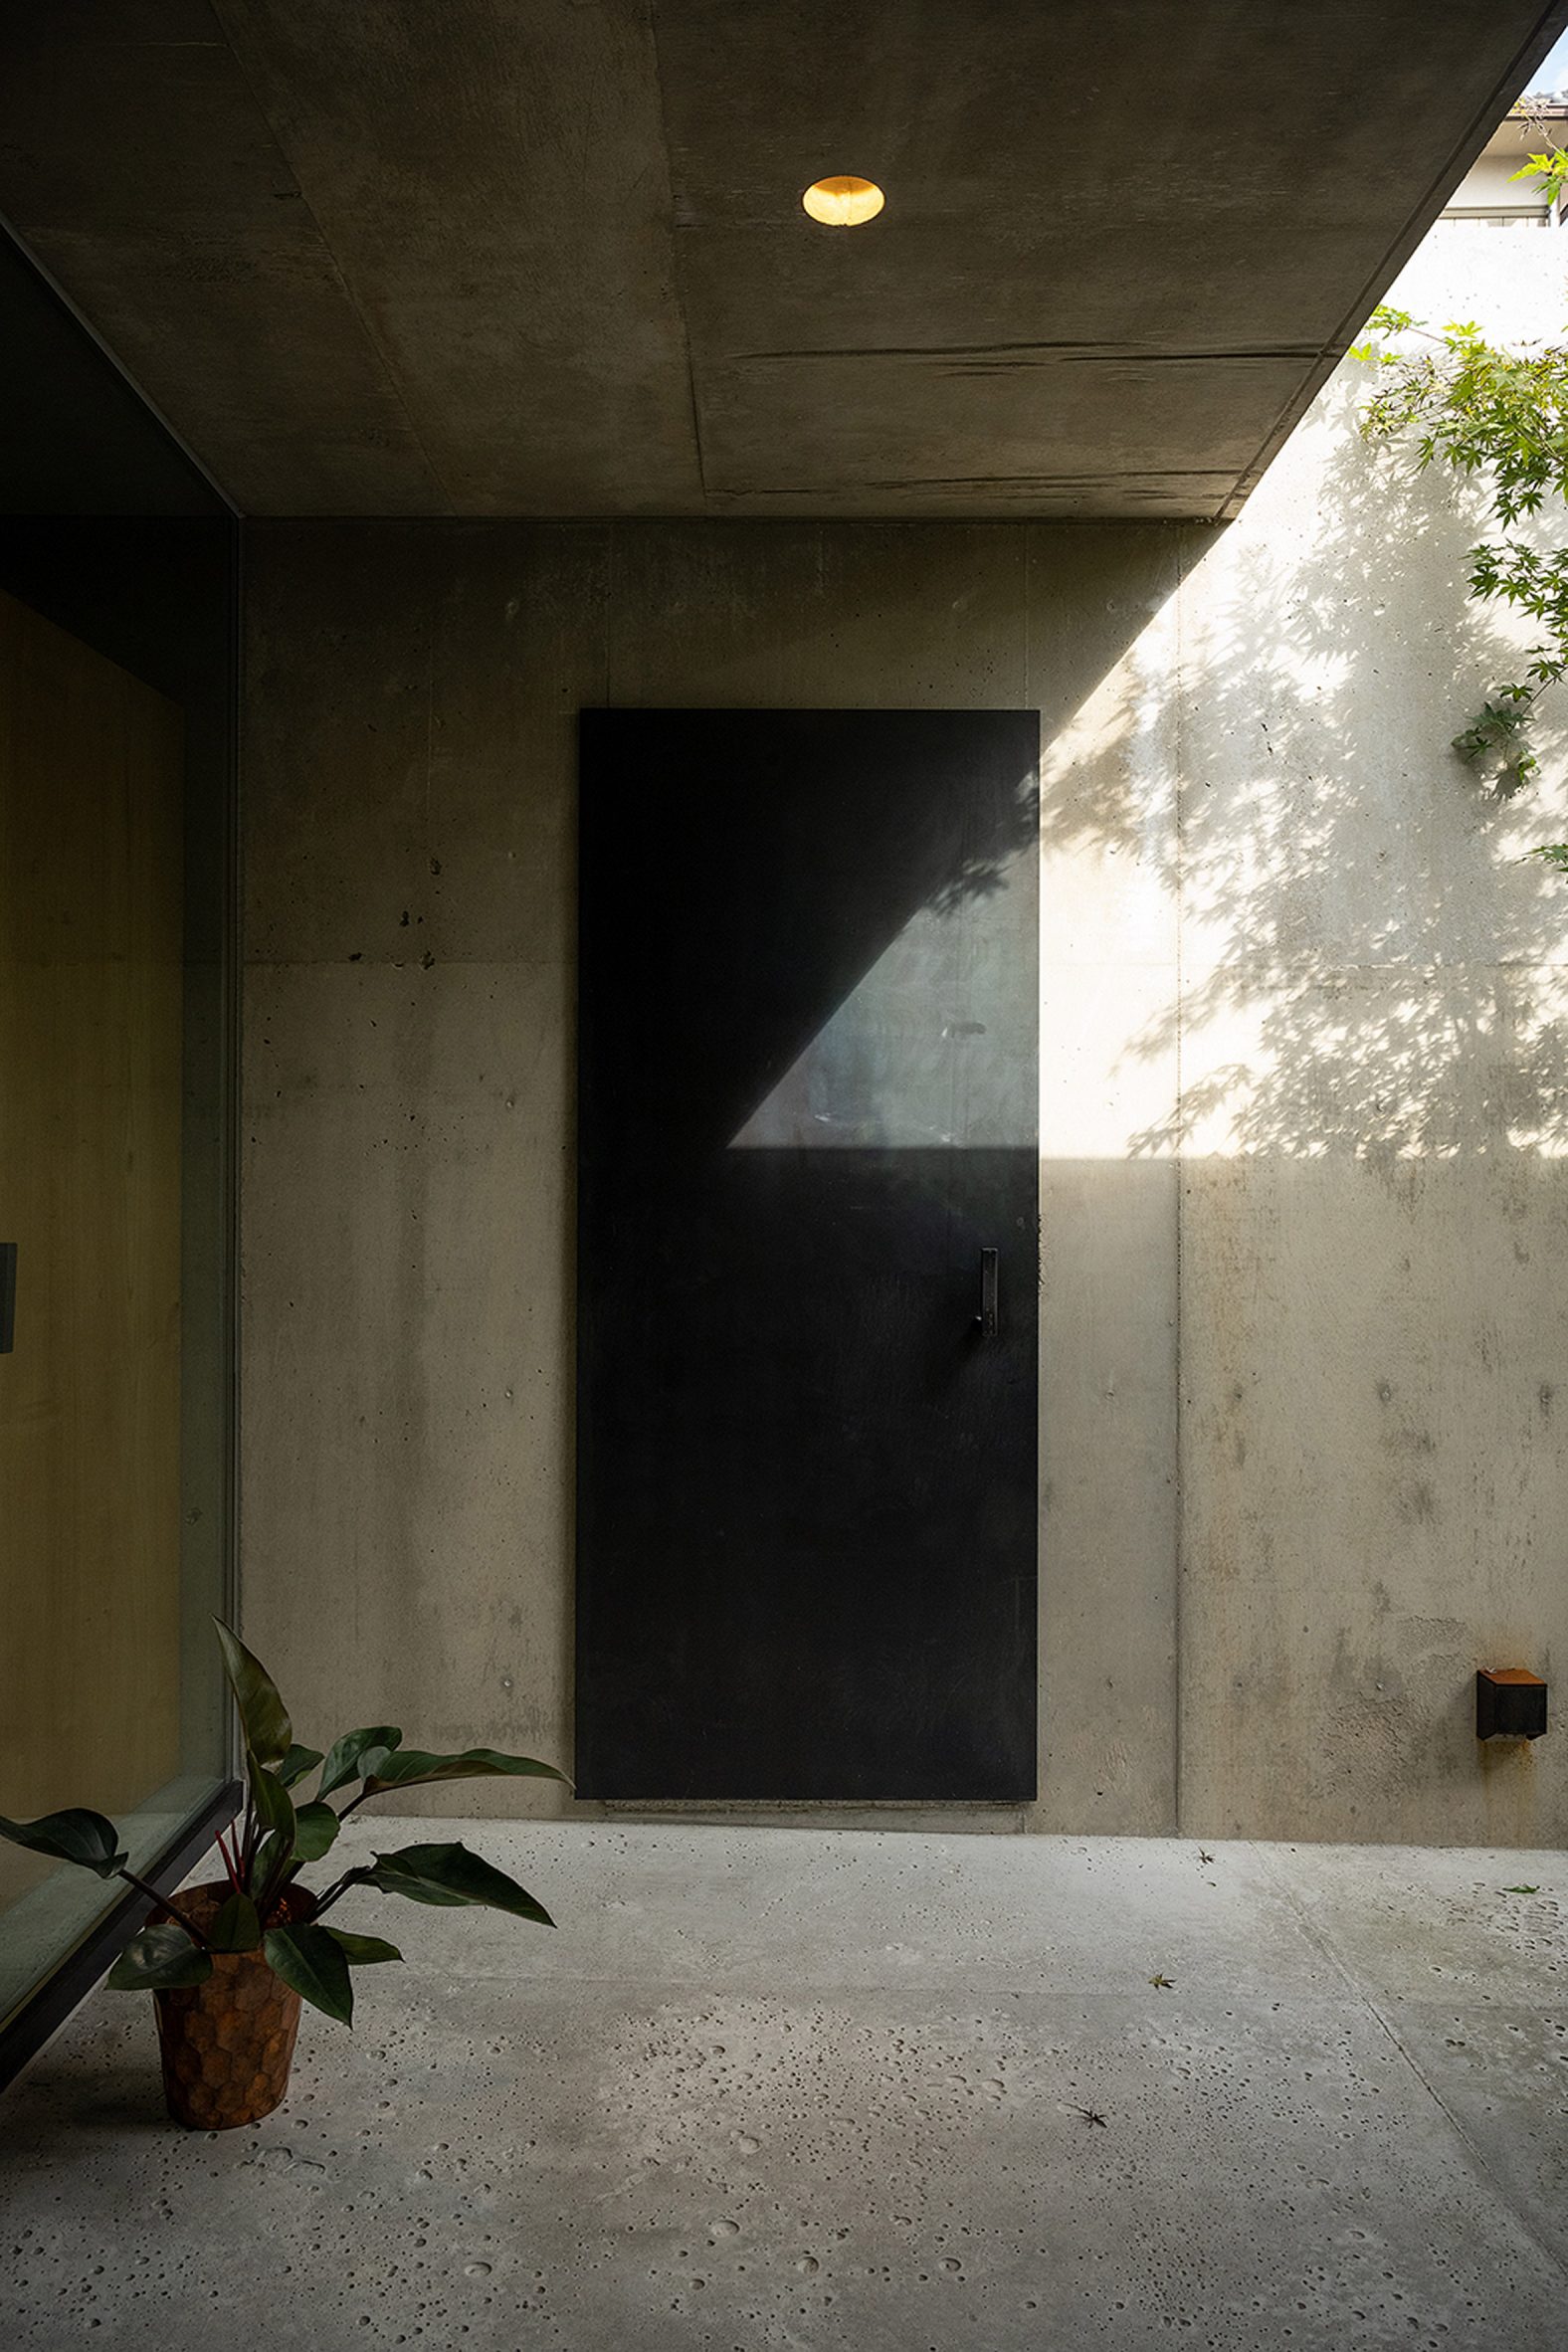 Concrete walls with black door